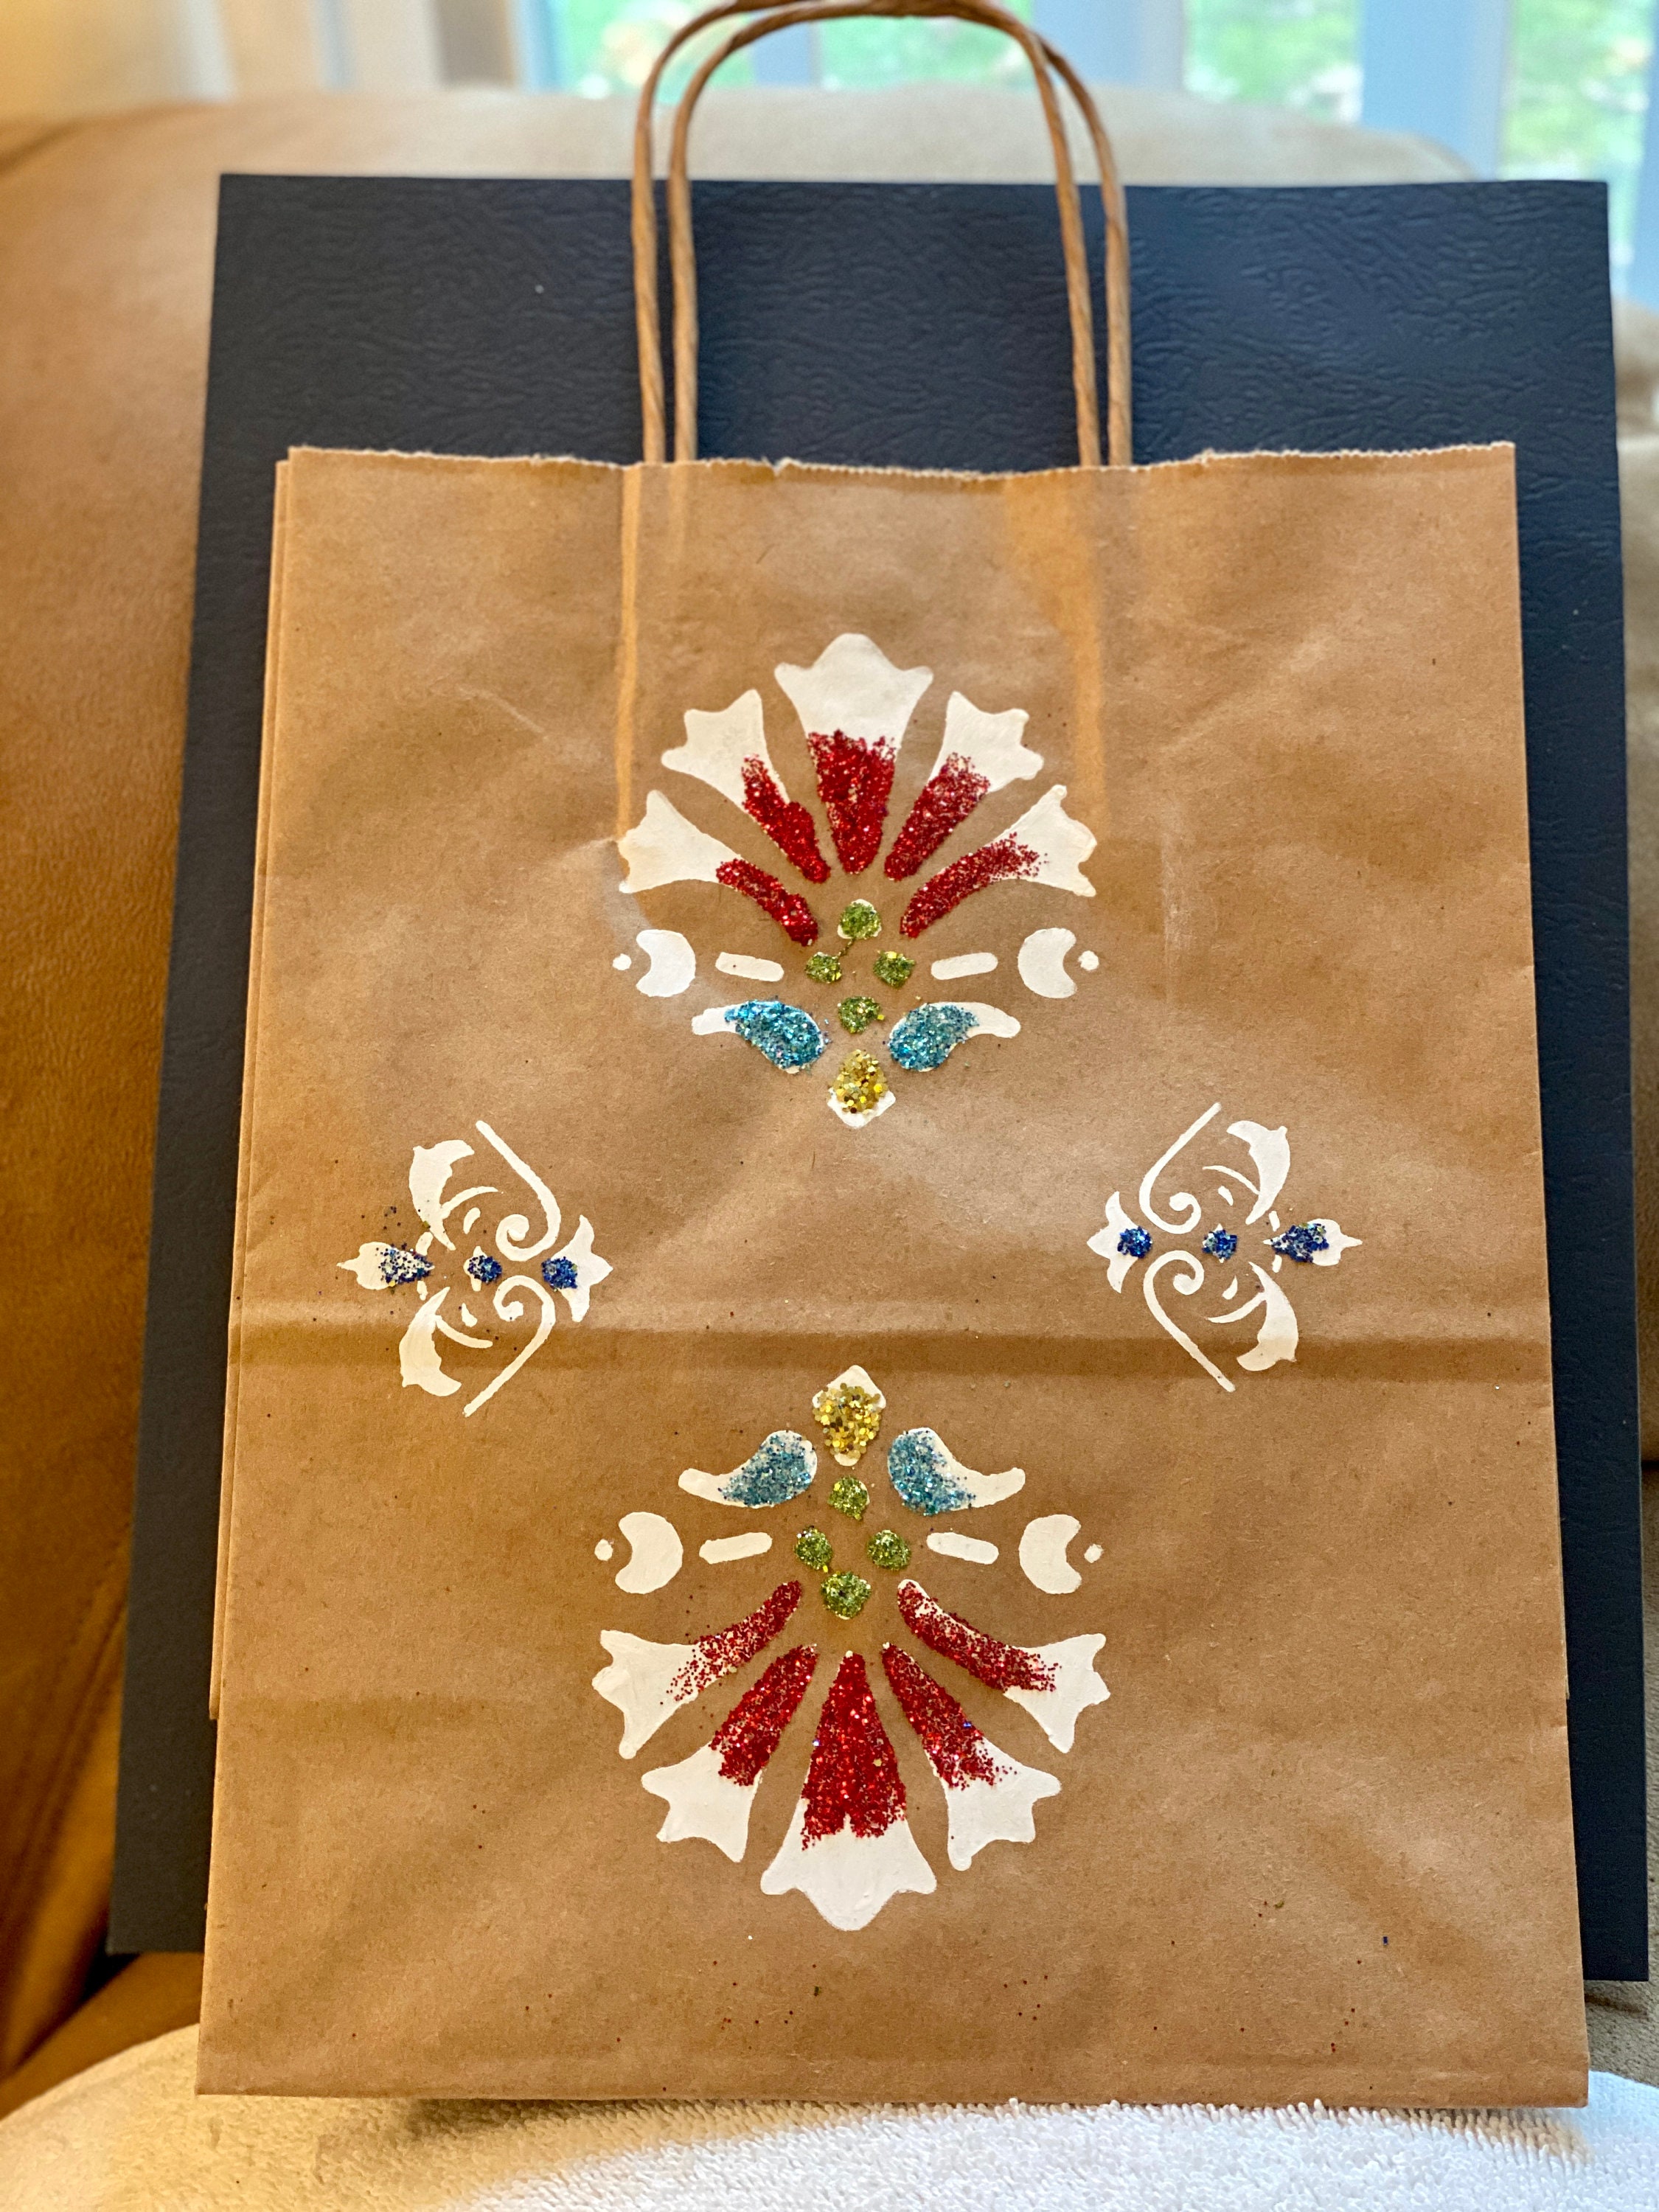 Decorative Brown Paper Bags 